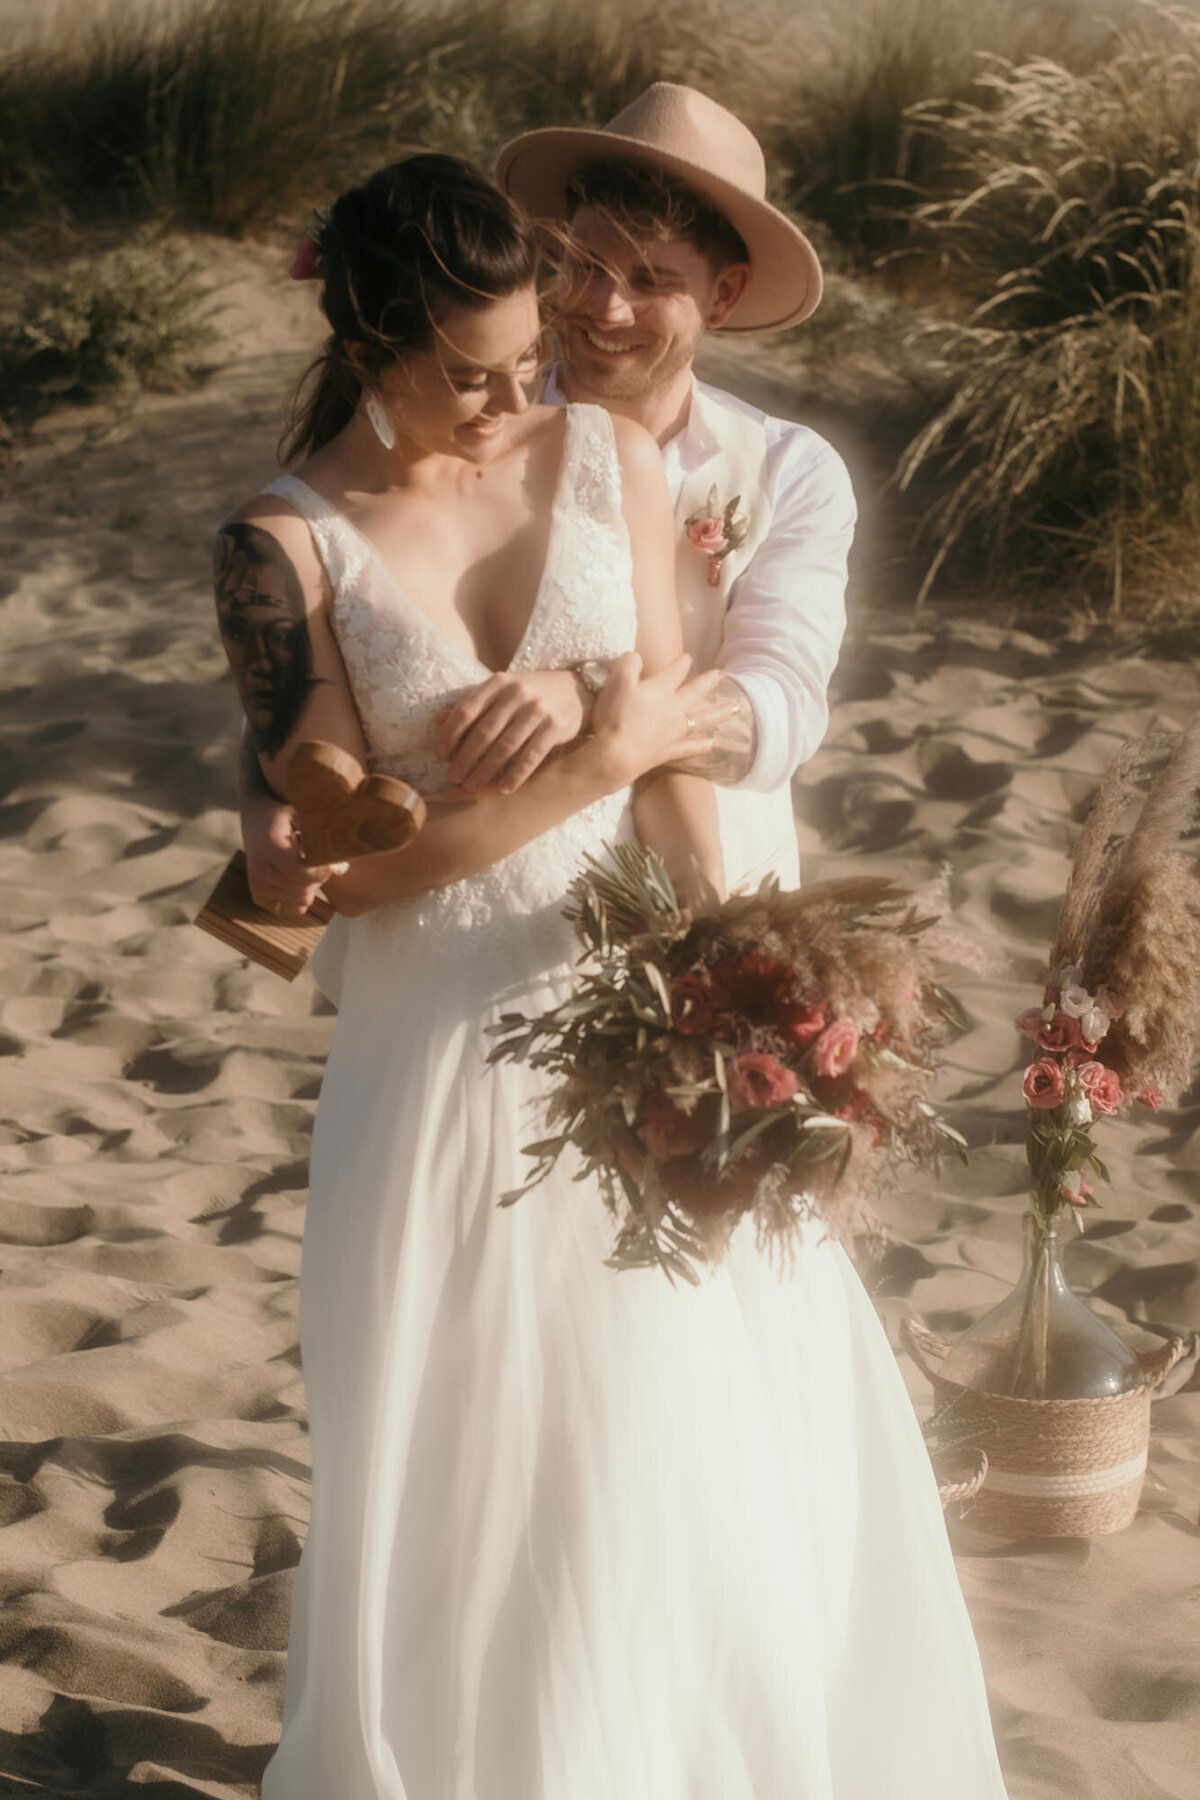 Nach der Trauung umarmt der Bräutigam seine Braut glücklich von hinten. Sie blickt zu Boden.